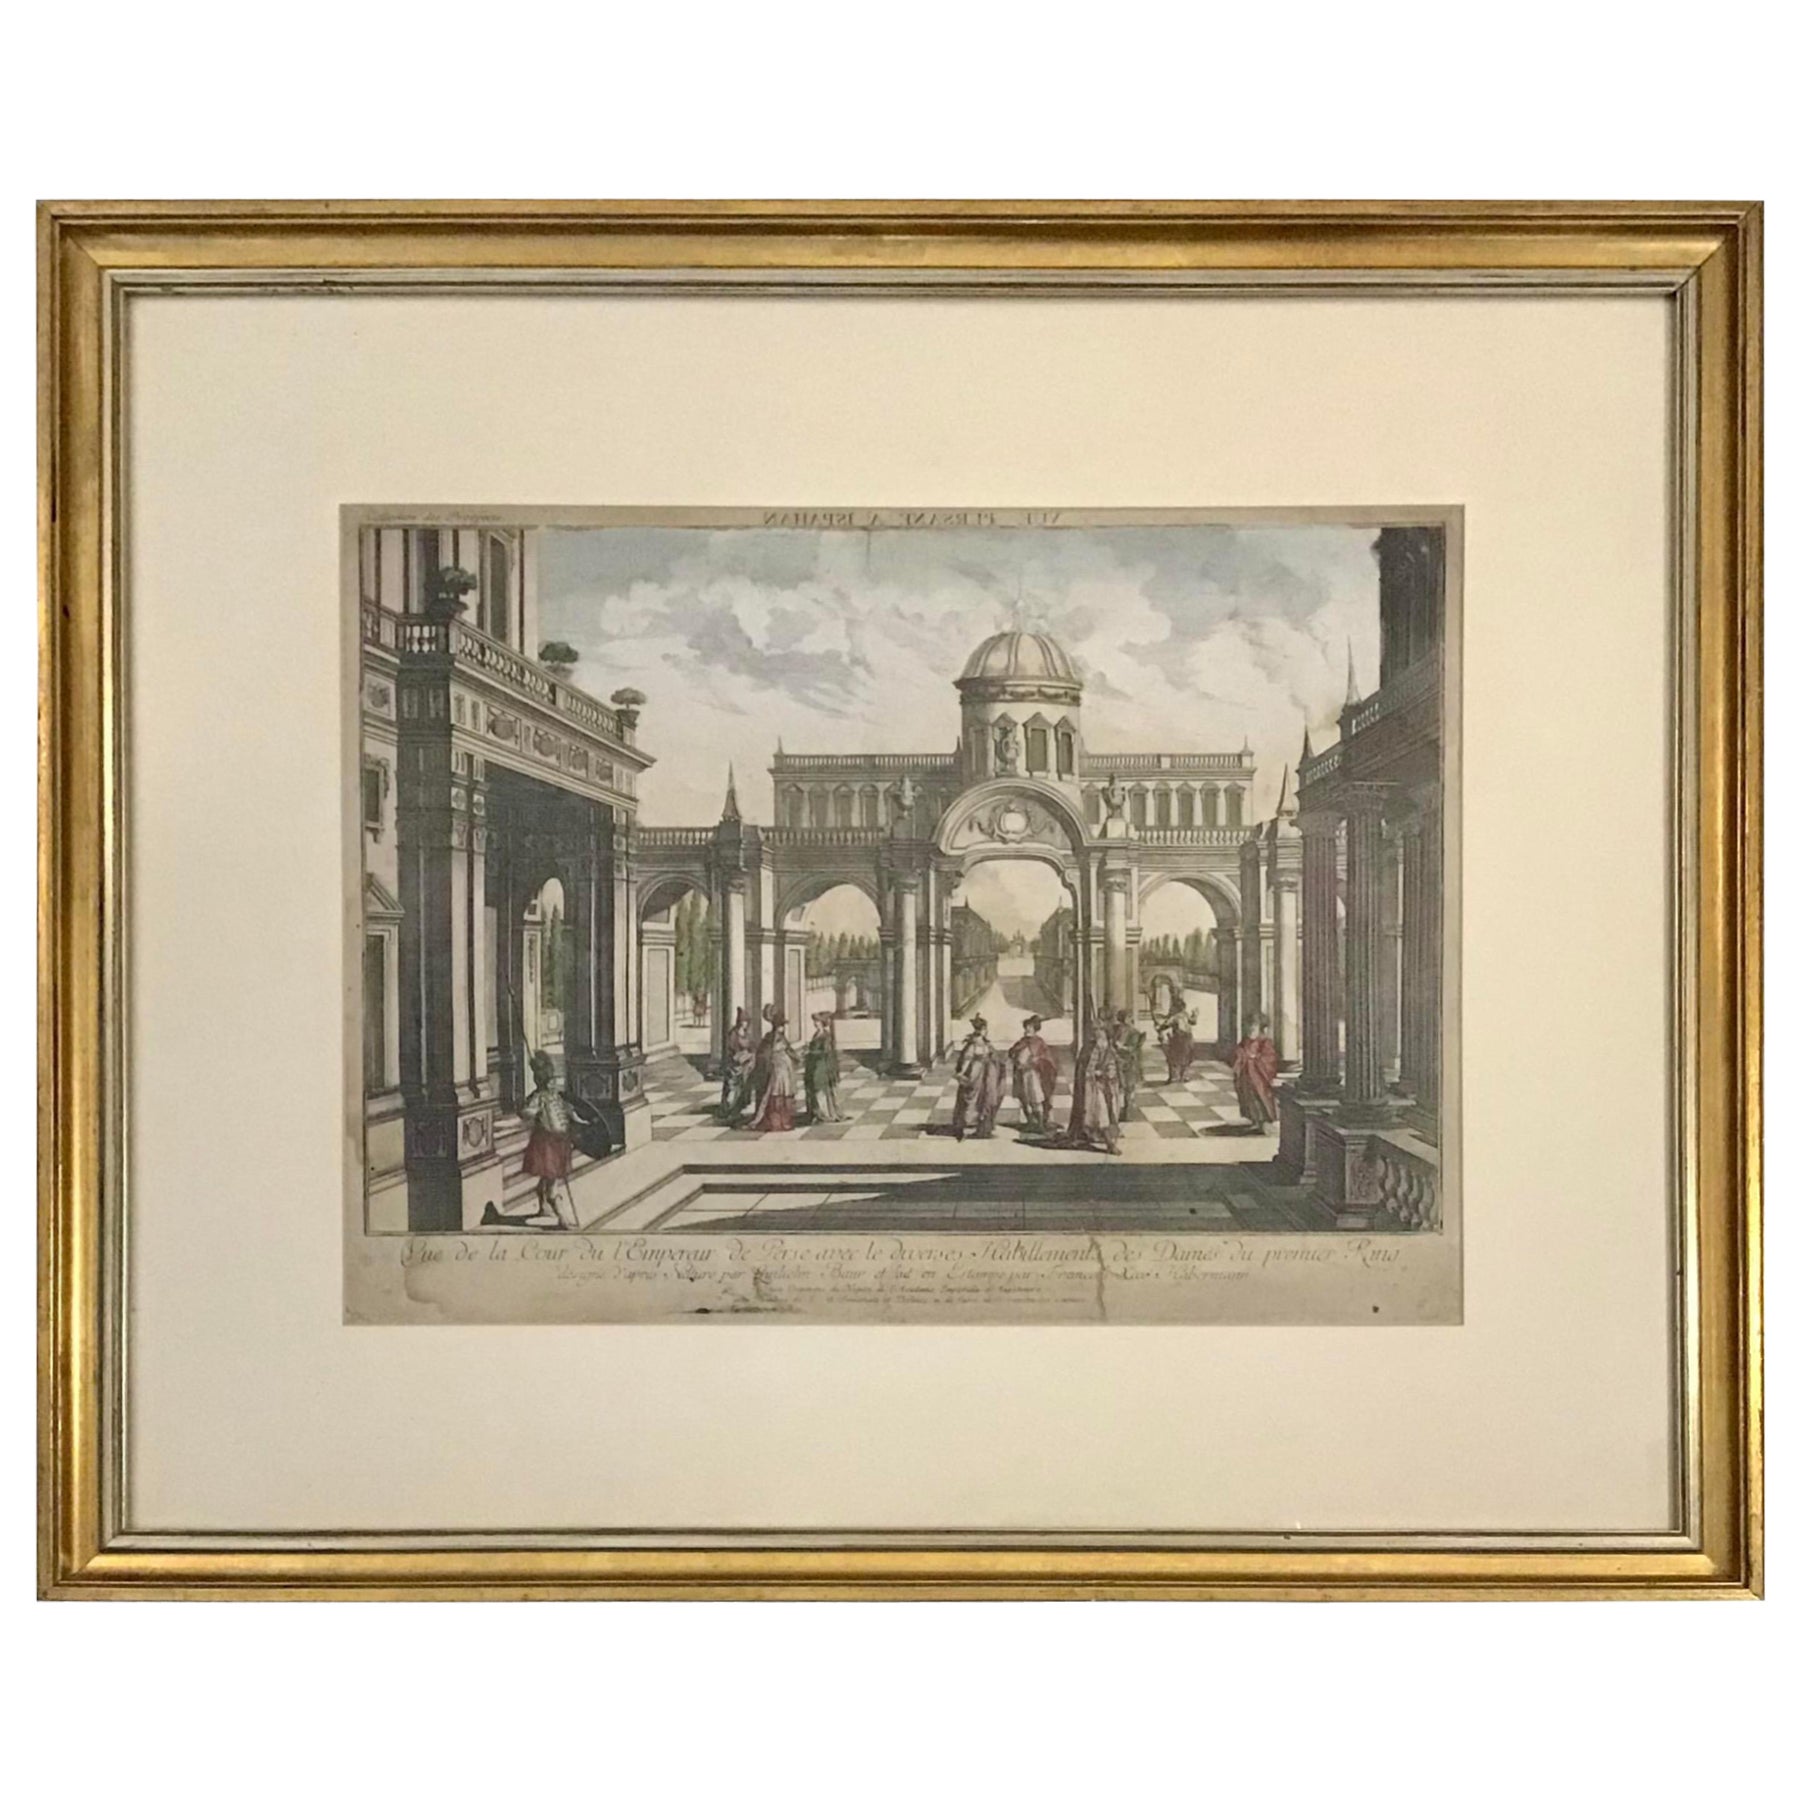 Gravure française du 18ème siècle représentant une scène architecturale avec des détails à l'aquarelle